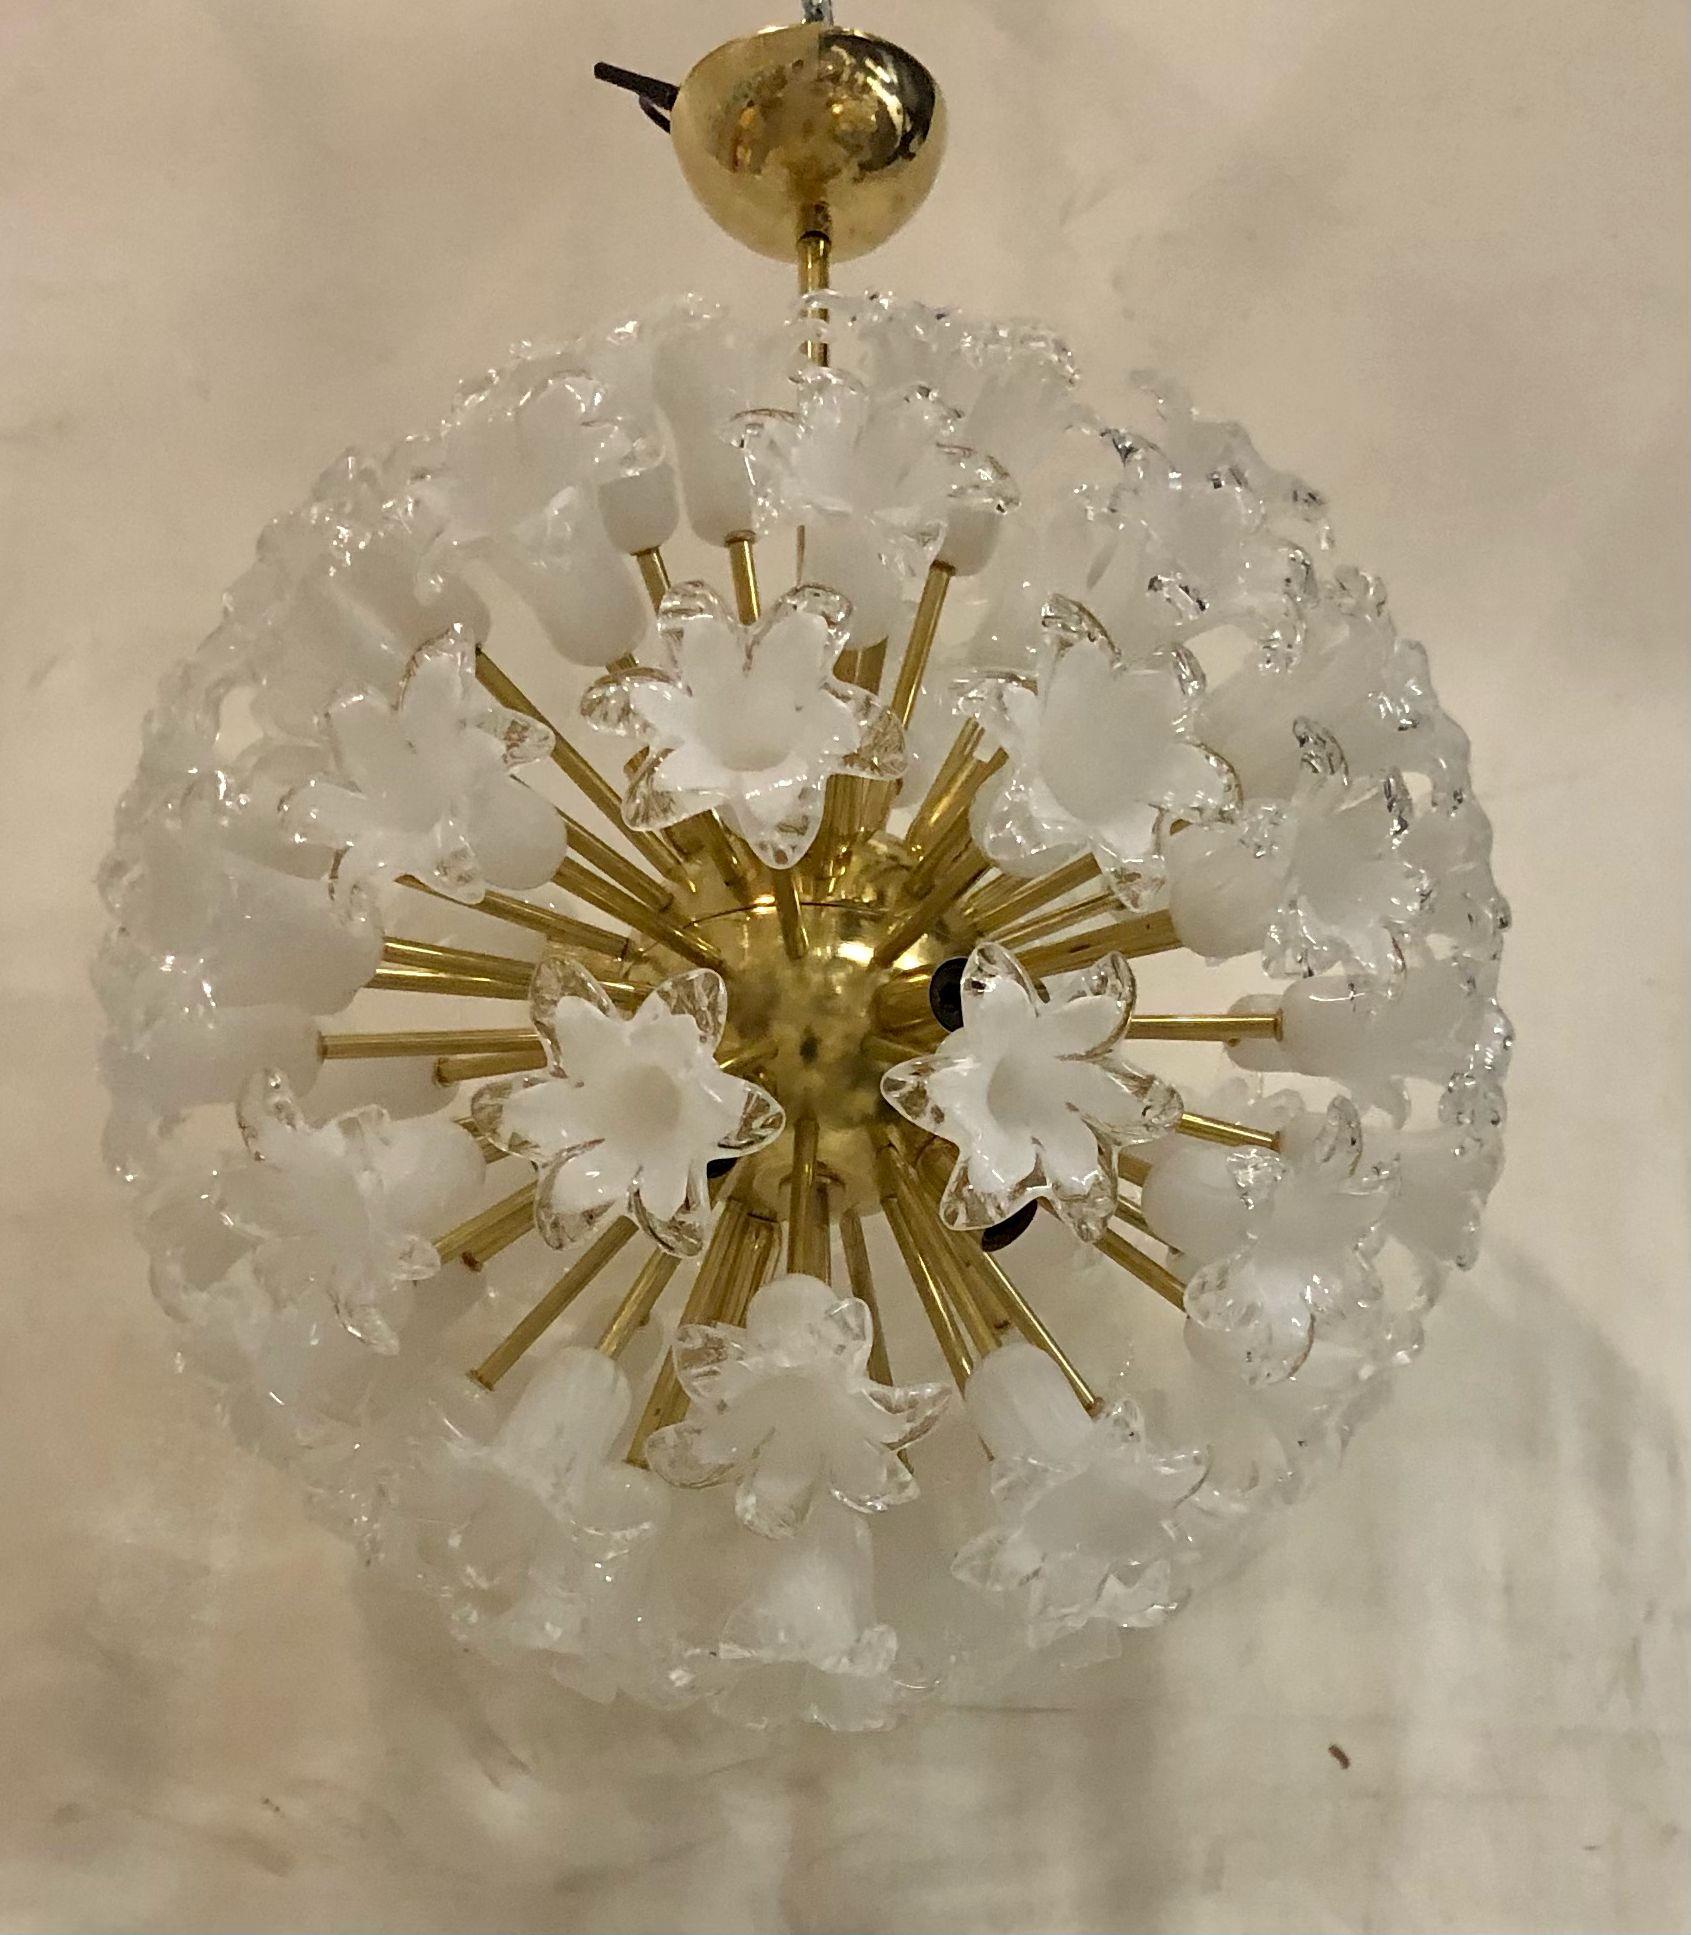 Les grandes fleurs en verre composent ce lustre Murano des années 1980. Un Sputnik classique du milieu du siècle.

Le lustre se compose d'une grande sphère centrale dans laquelle sont vissées des tiges de laiton, des fleurs en verre blanc sont